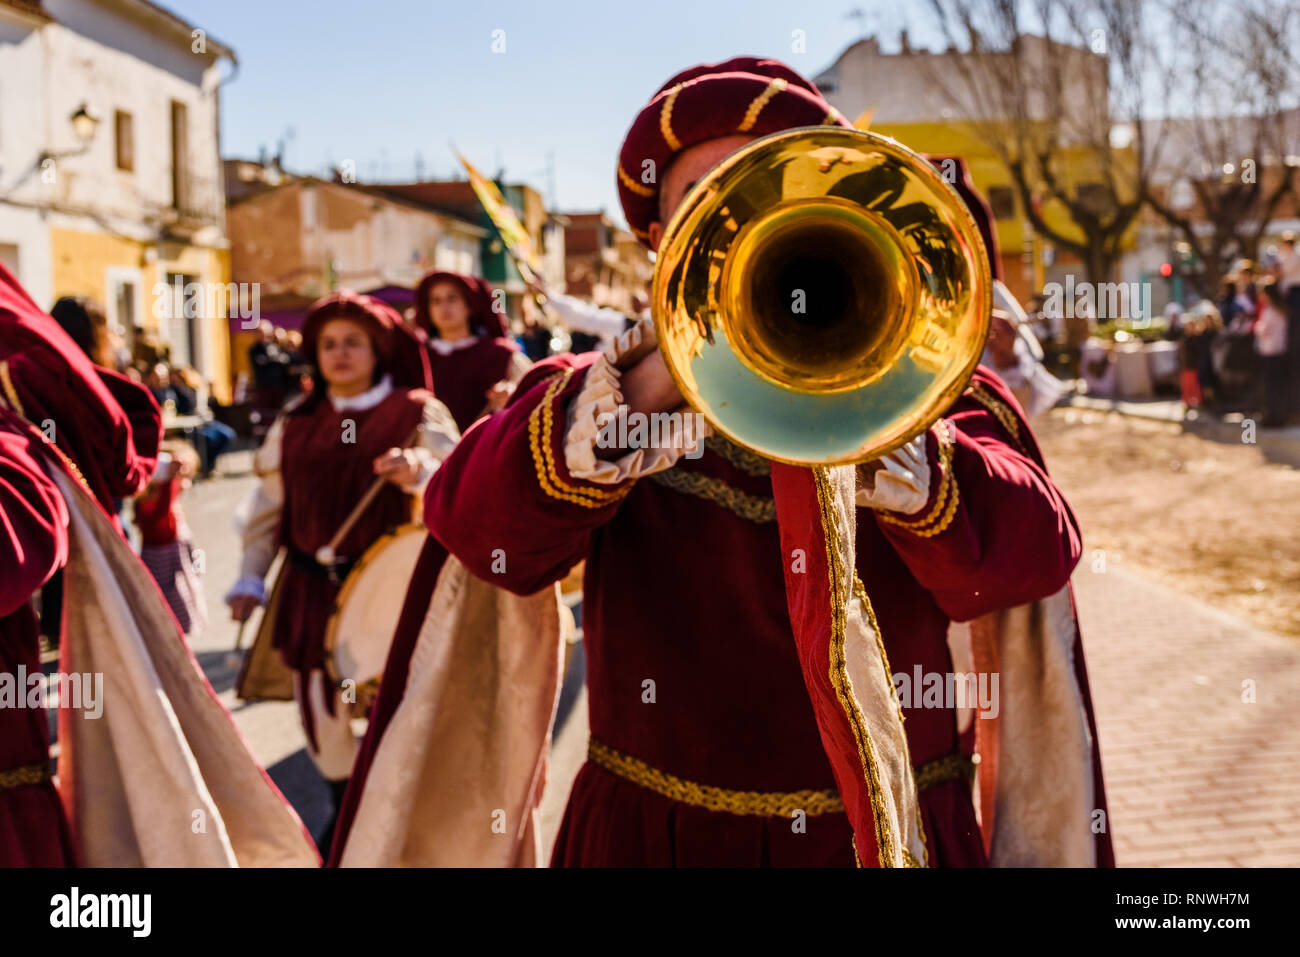 Valencia, Espagne- 27 Janvier, 2019 : trompettistes habillés comme des troubadours médiévaux à jouer de la trompette au cours d'une fête médiévale. Banque D'Images